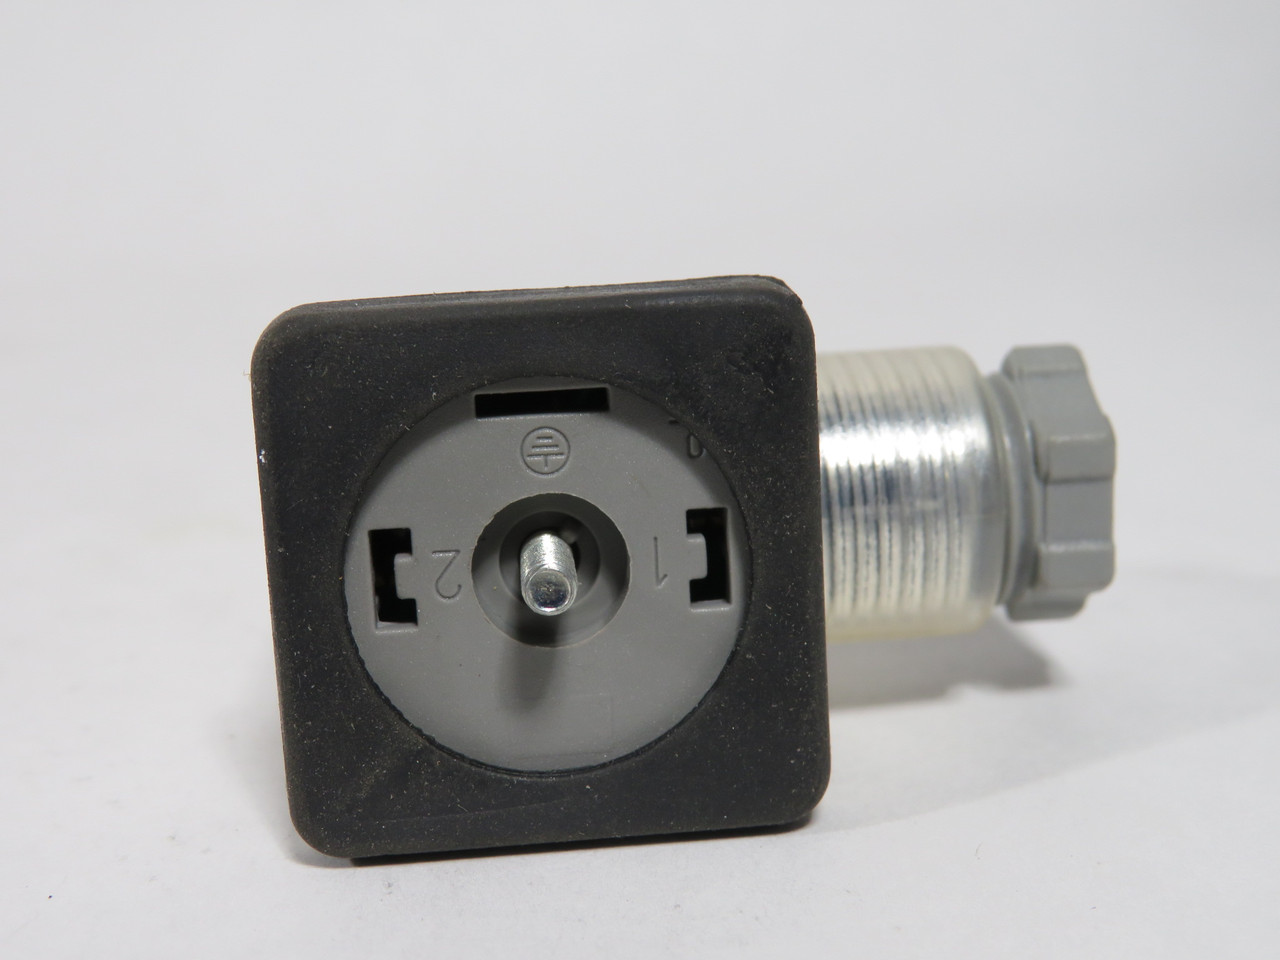 Omal 04560014 Solenoid DIN Plug w/ LED 110V 3-Pin NOP